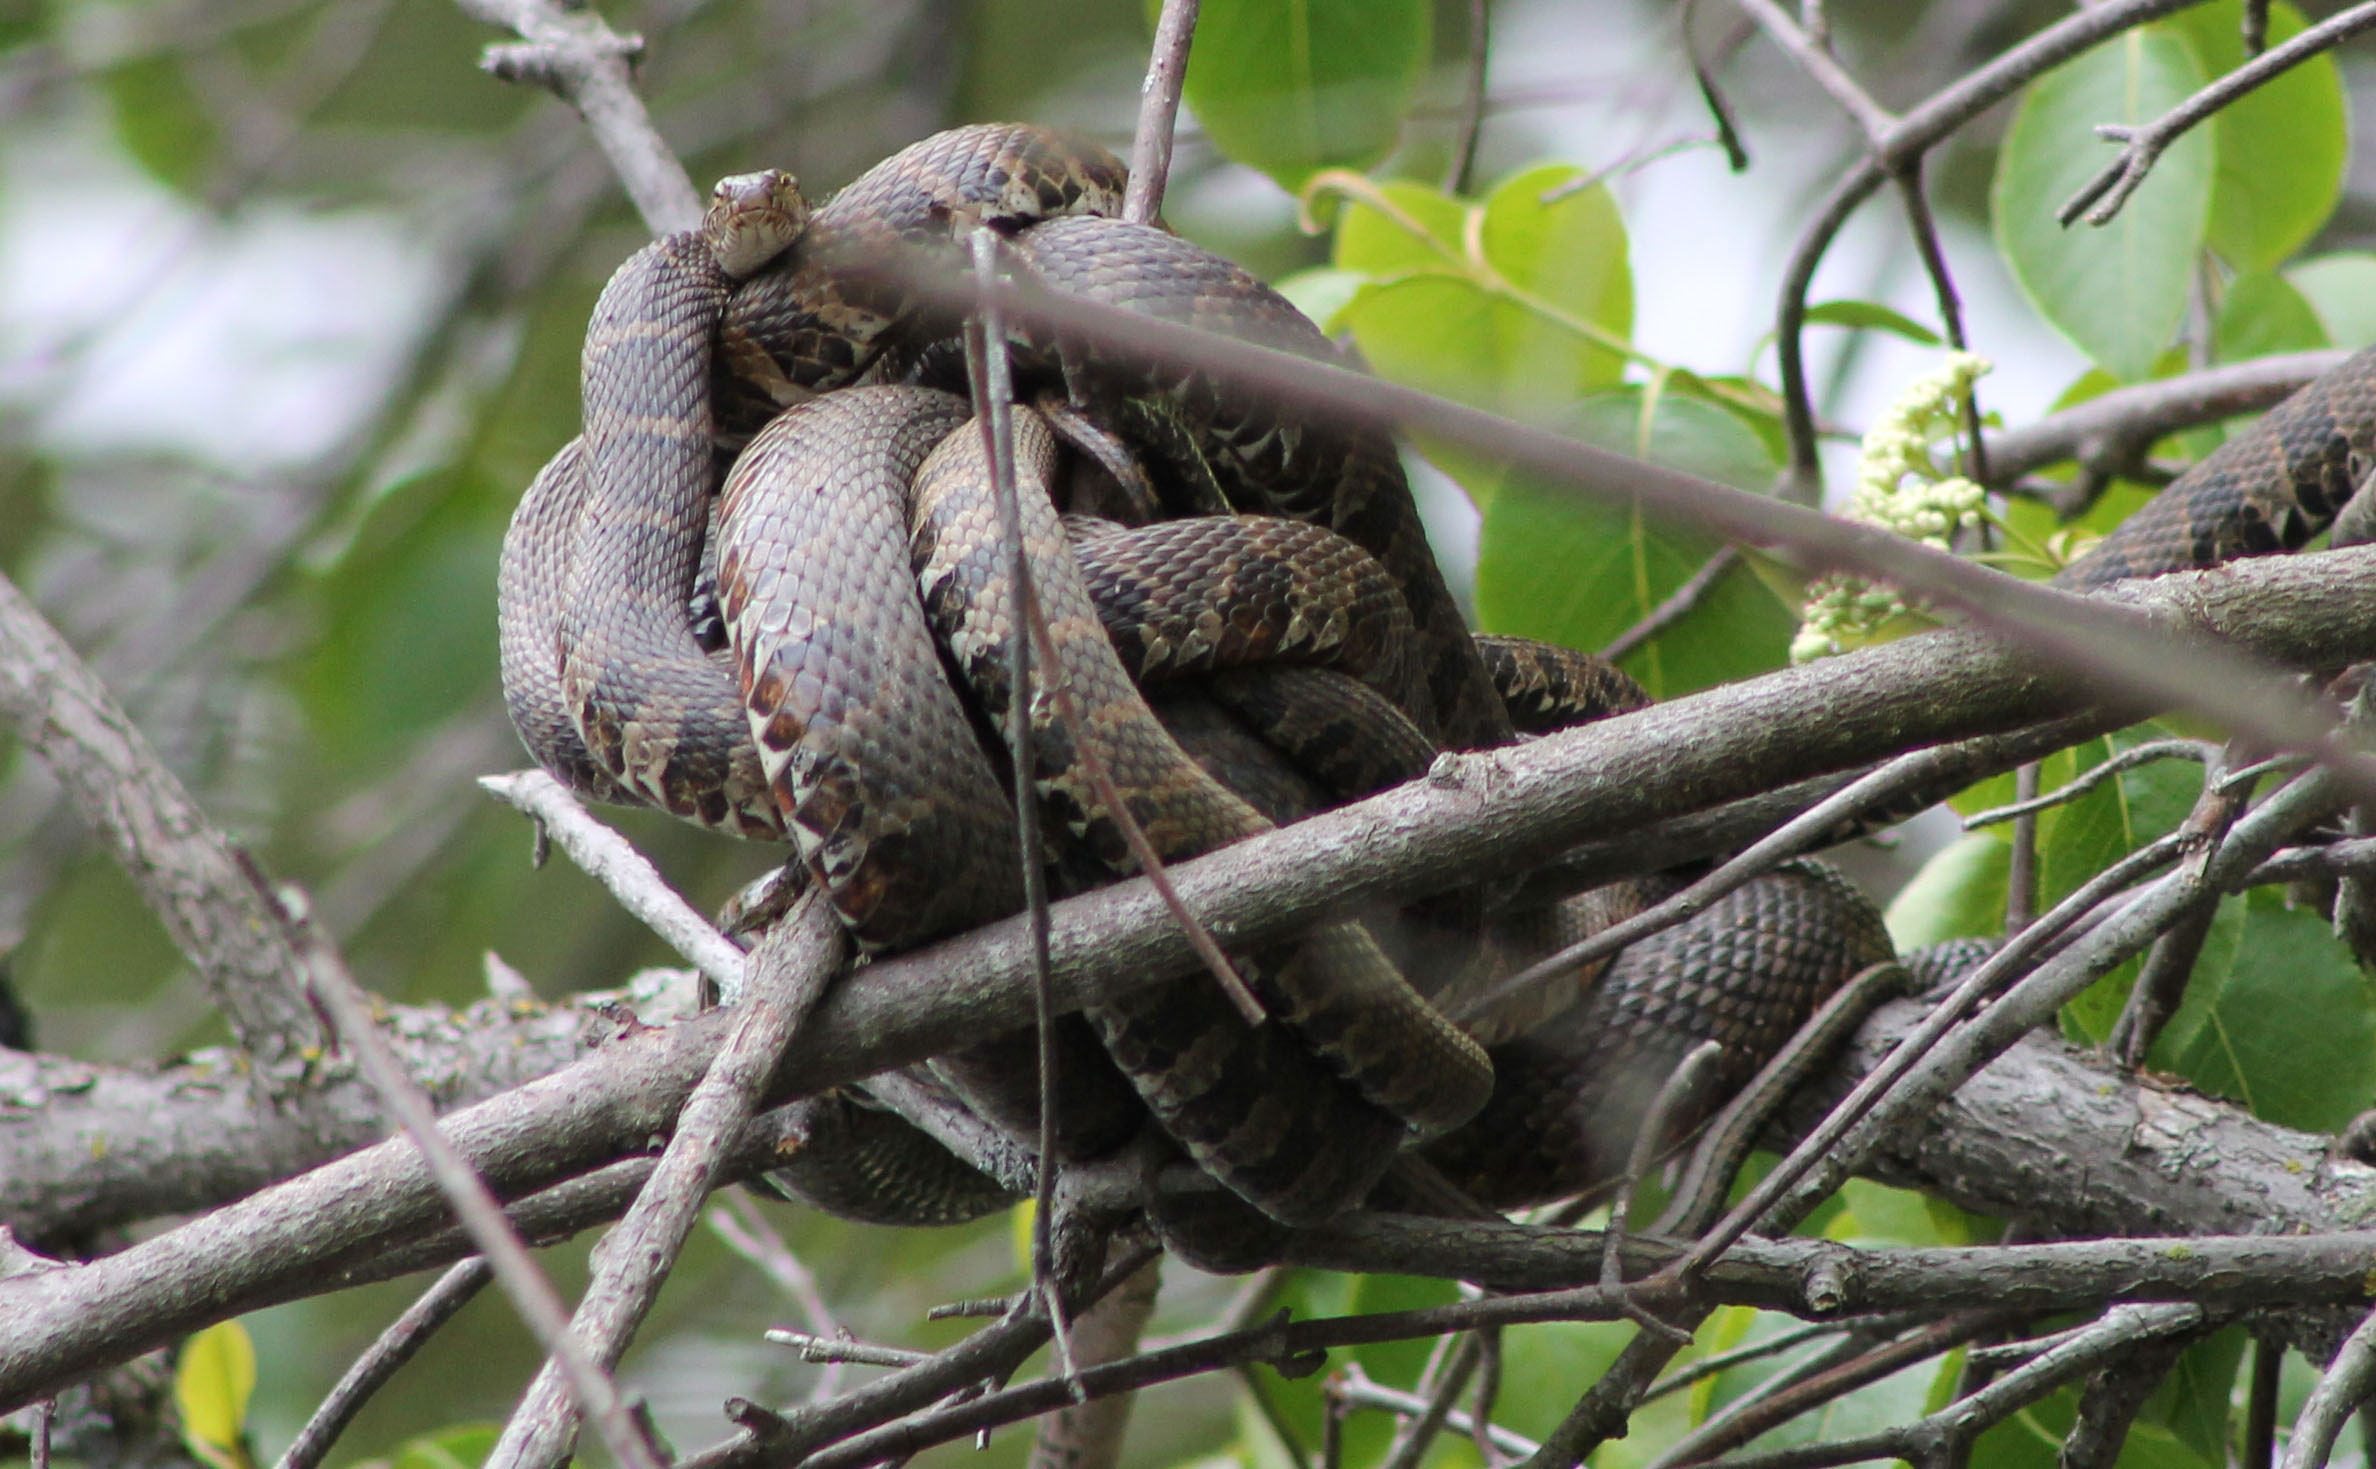 Garter snakes in a mating ball.